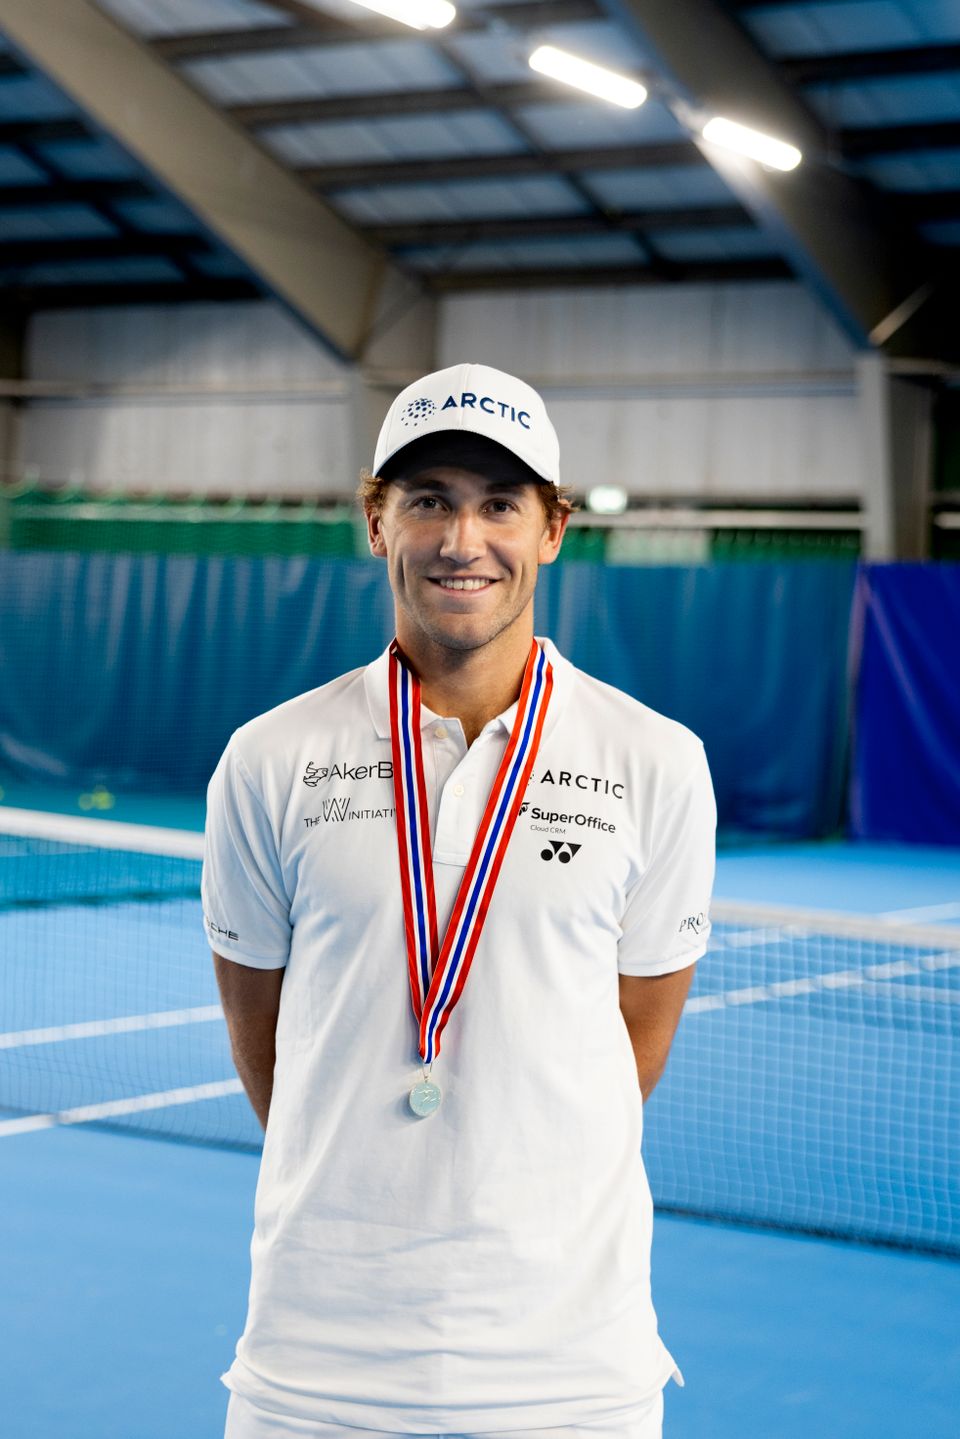 En mann med hvit caps, hvit t-skjorte og en medalje rundt halsen smiler.